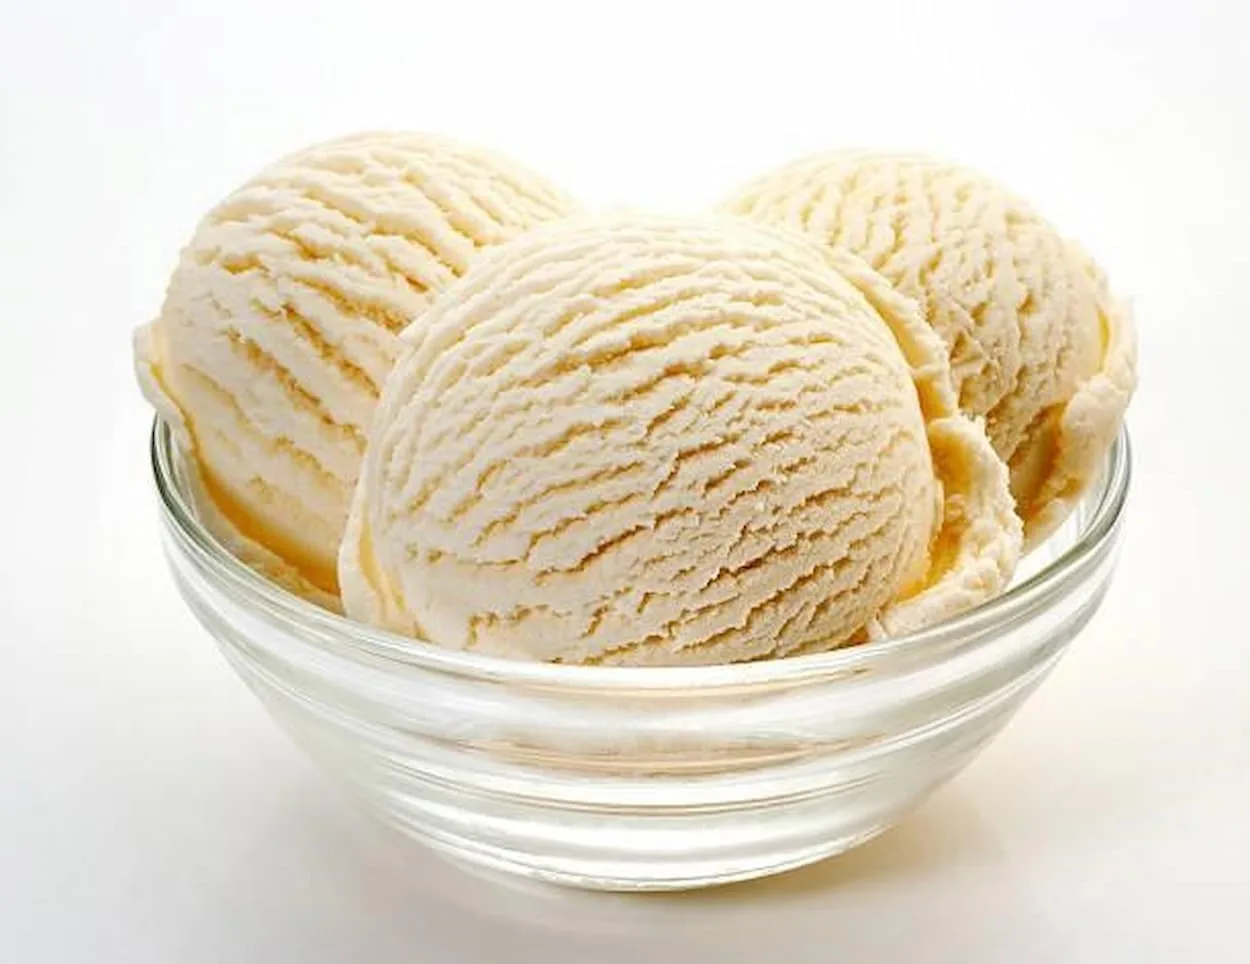  Klasikiniai vaniliniai ir vanilės pupelių ledai - visi skirtumai